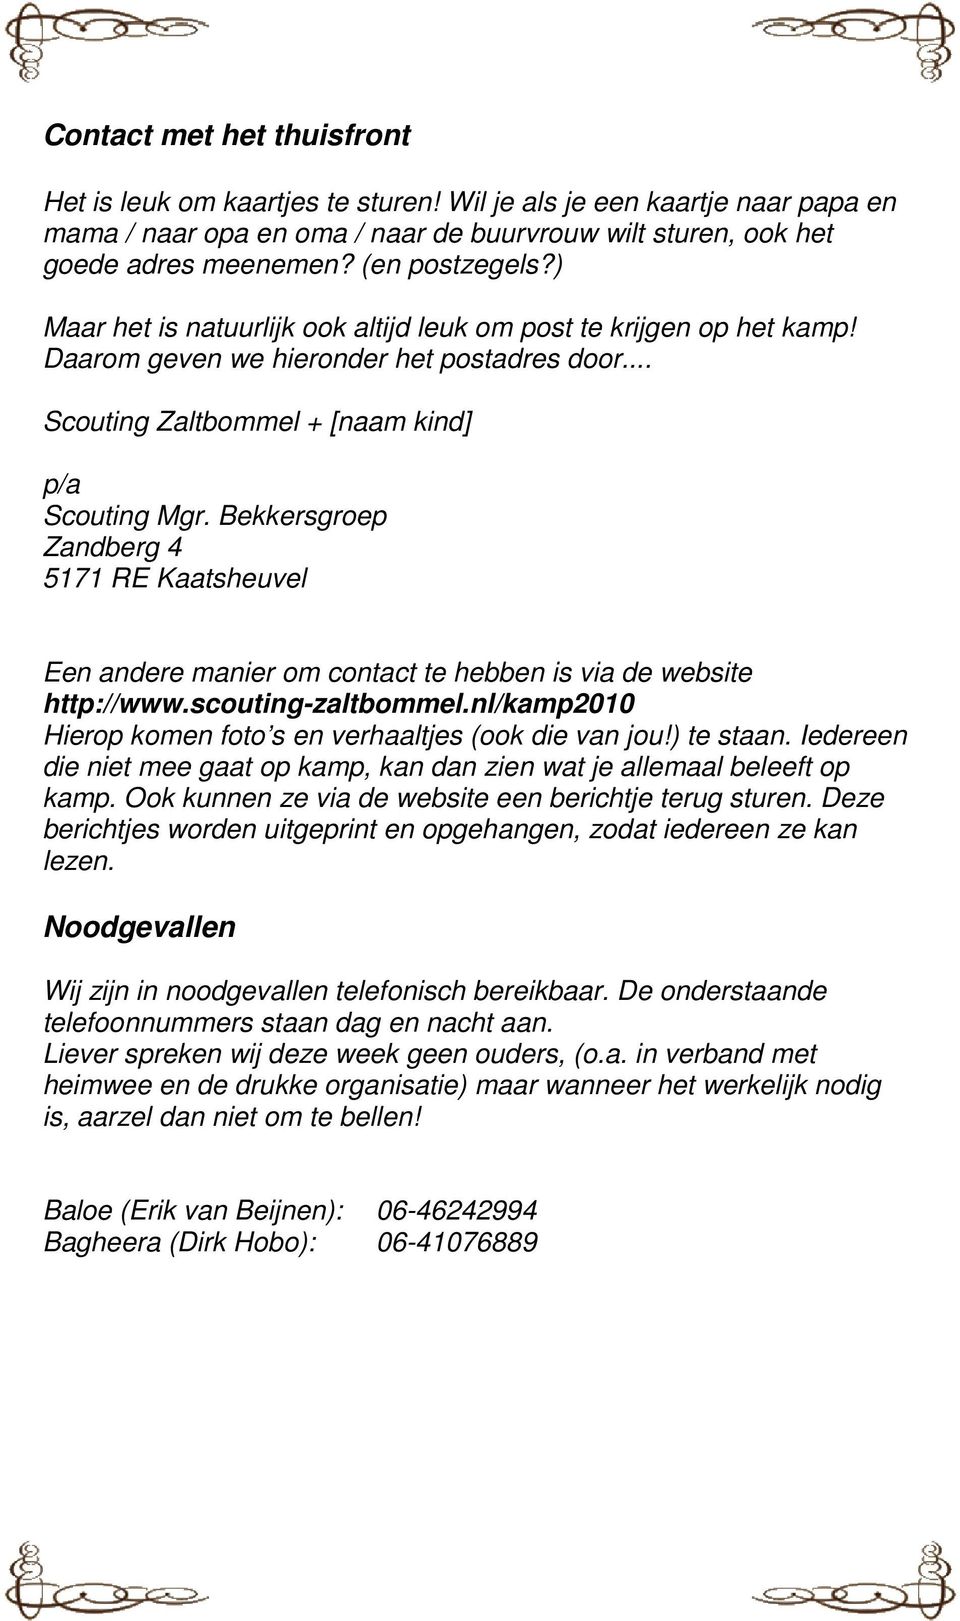 Bekkersgroep Zandberg 4 5171 RE Kaatsheuvel Een andere manier om contact te hebben is via de website http://www.scouting-zaltbommel.nl/kamp2010 Hierop komen foto s en verhaaltjes (ook die van jou!